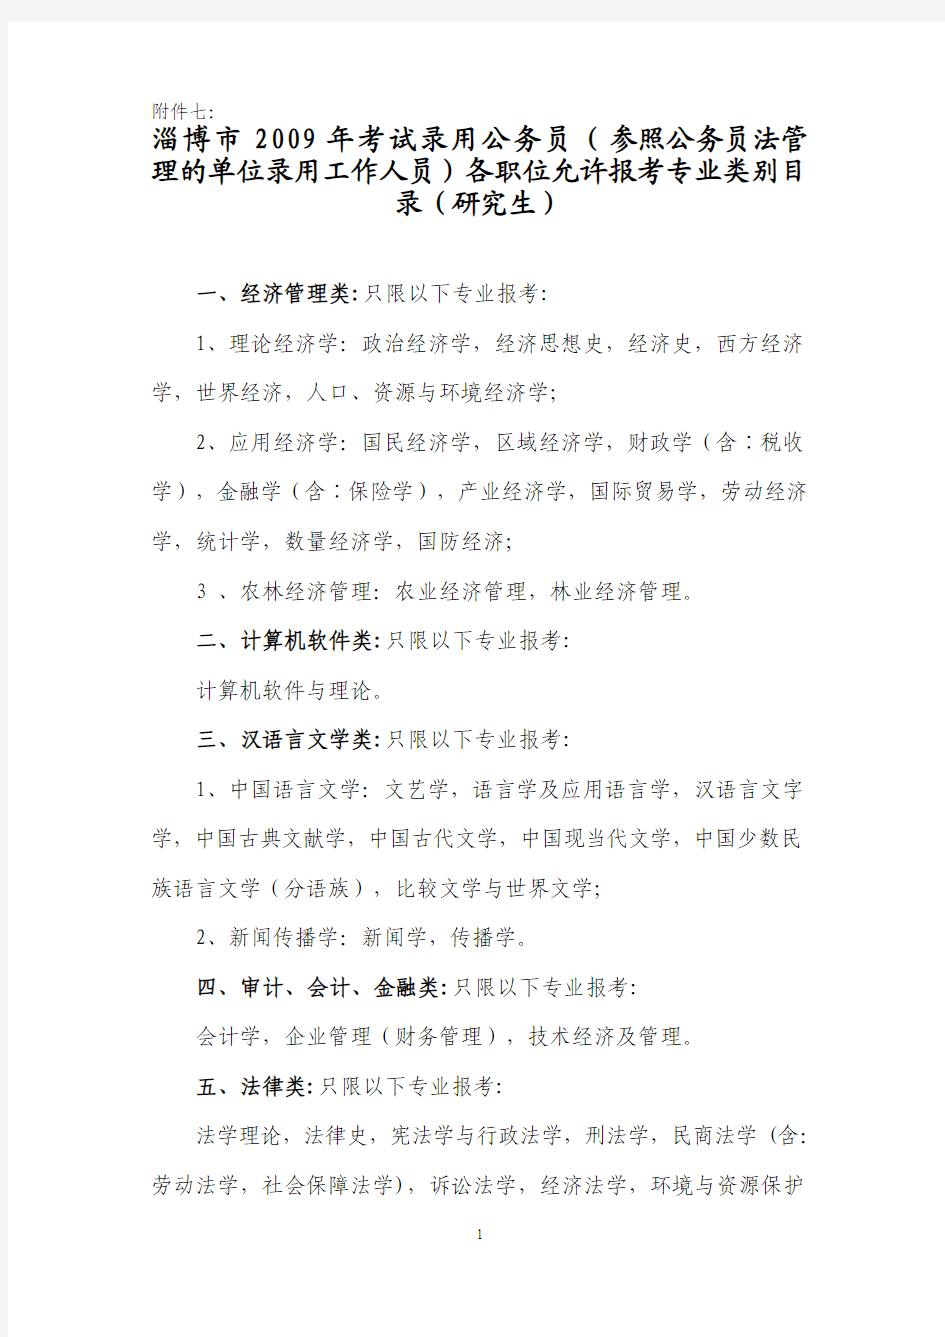 附件七：淄博市2009年考试录用公务员(参照公务员法管理的单位招考工作人员)各职位允许报考专业目录(研究